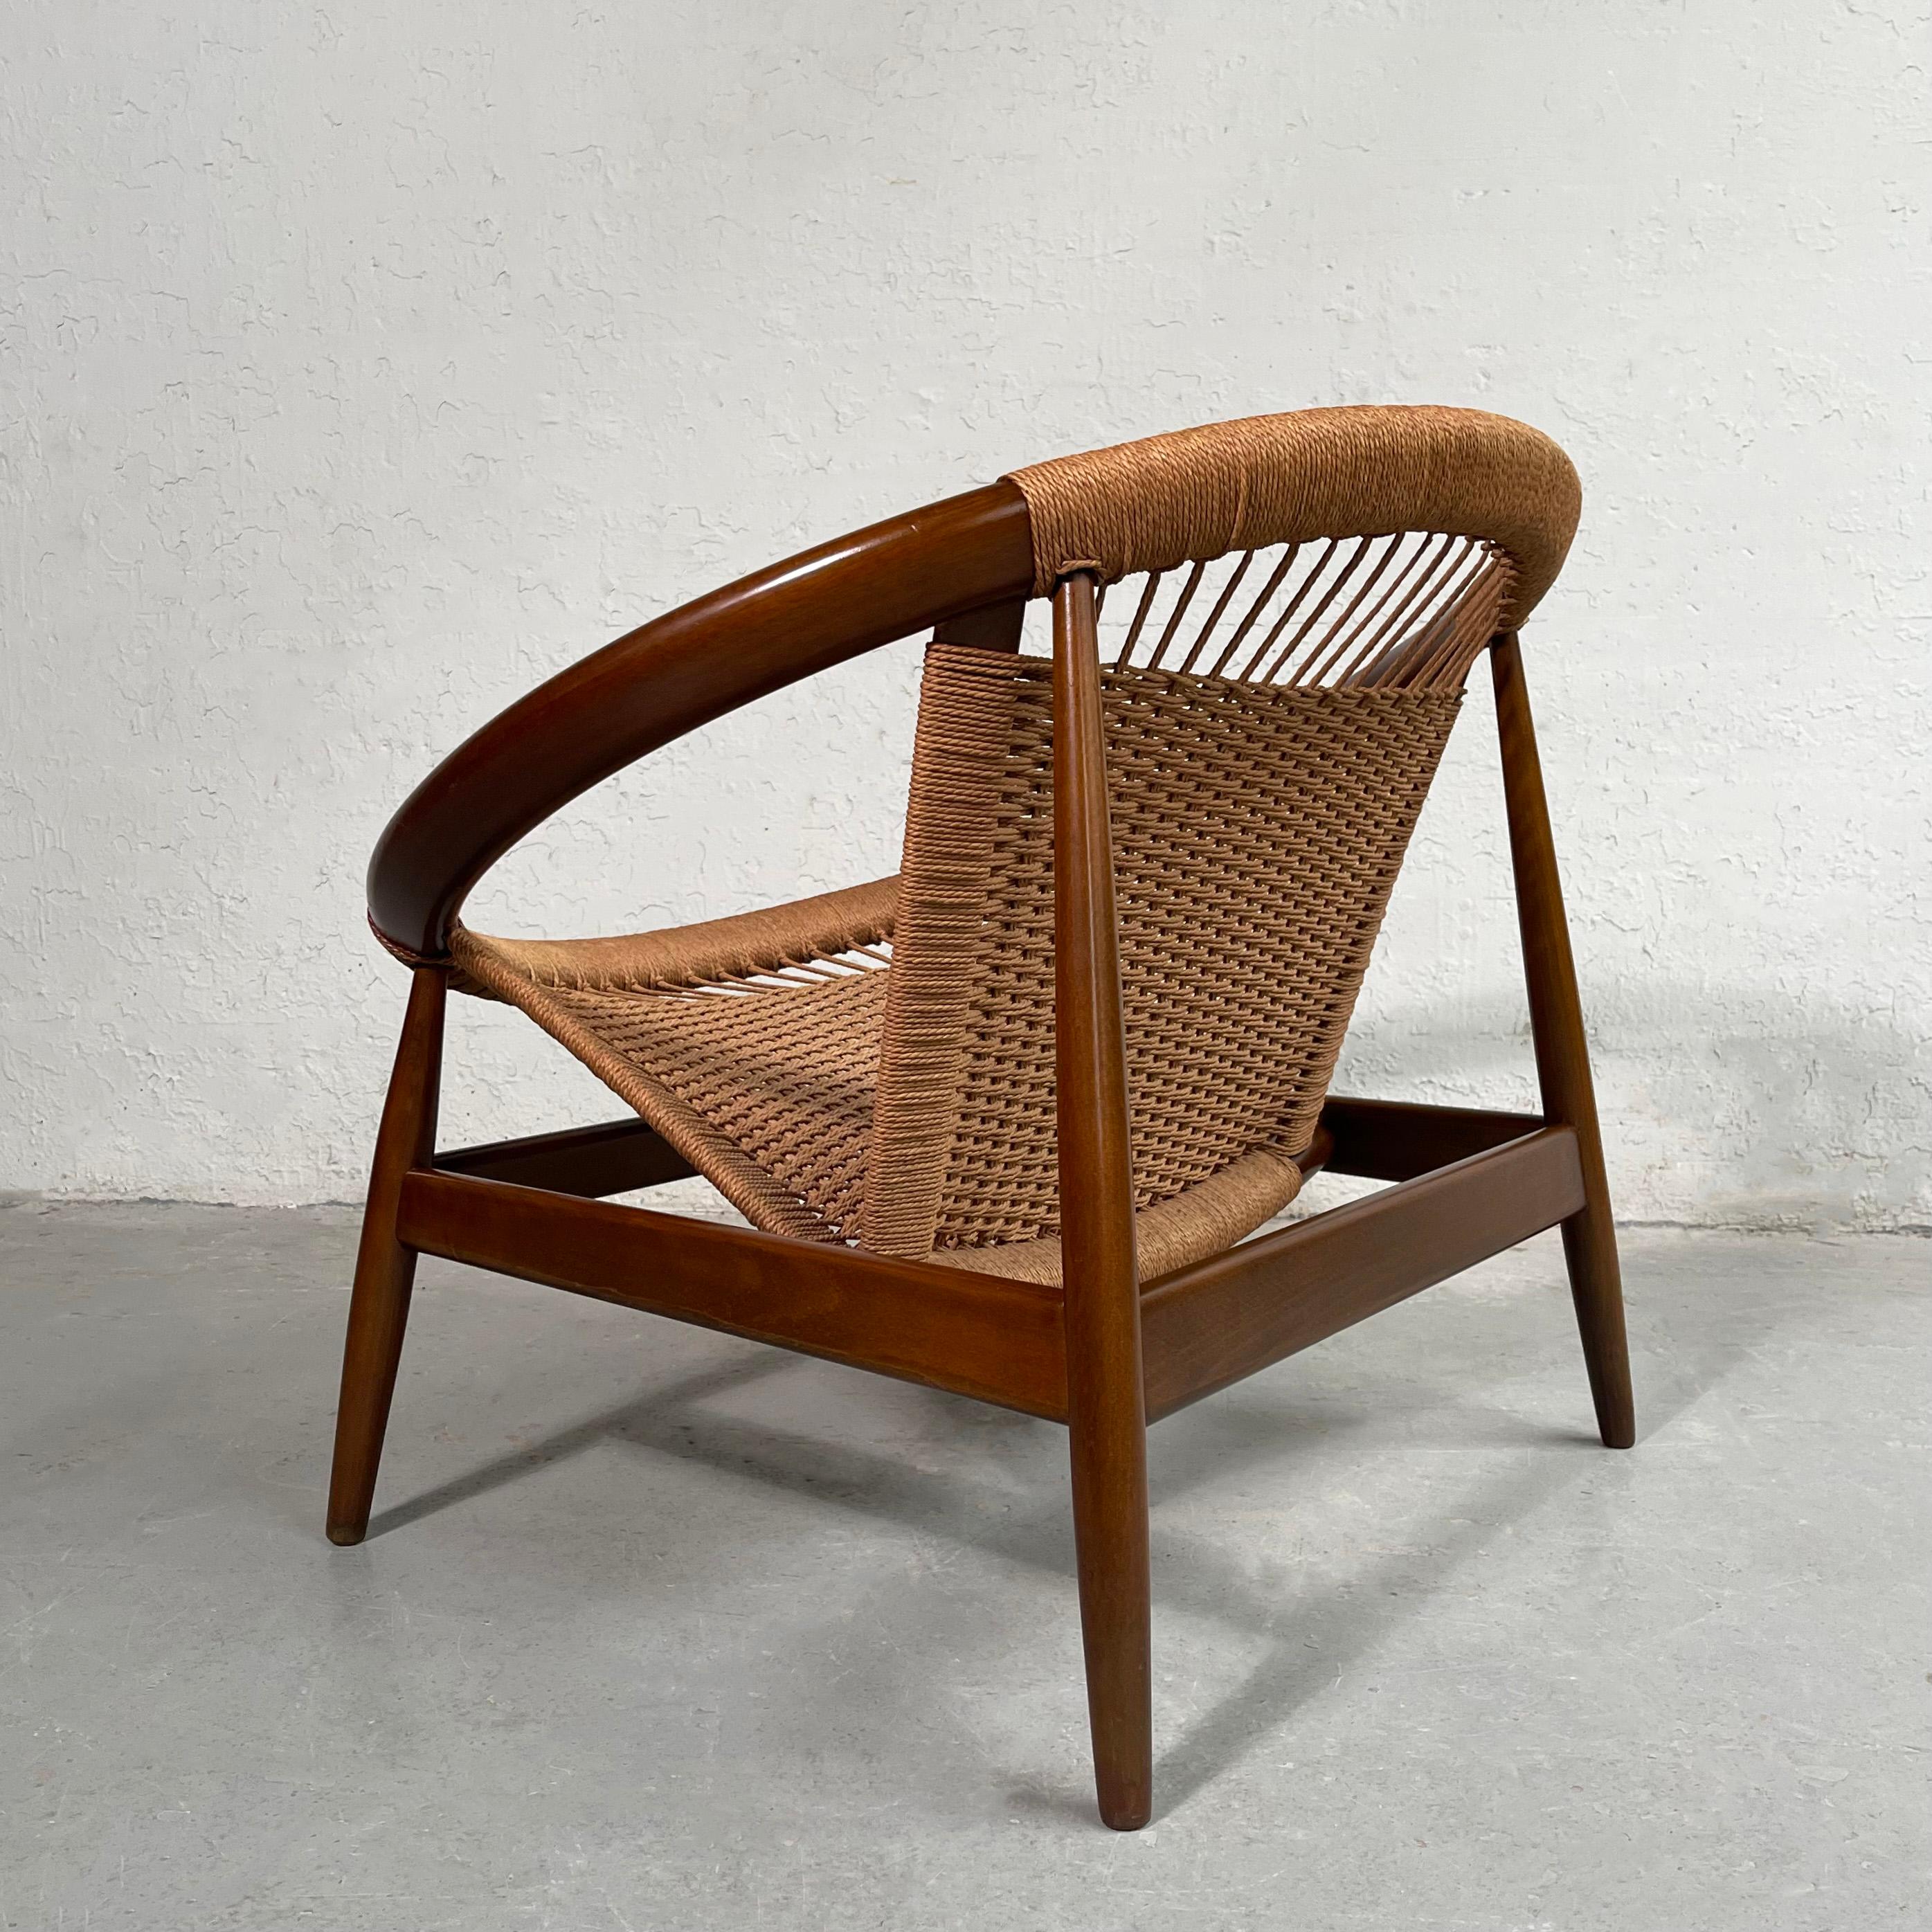 Cord Scandinavian Modern Ringstol Woven Hoop Chair by Illum Wikkelsø